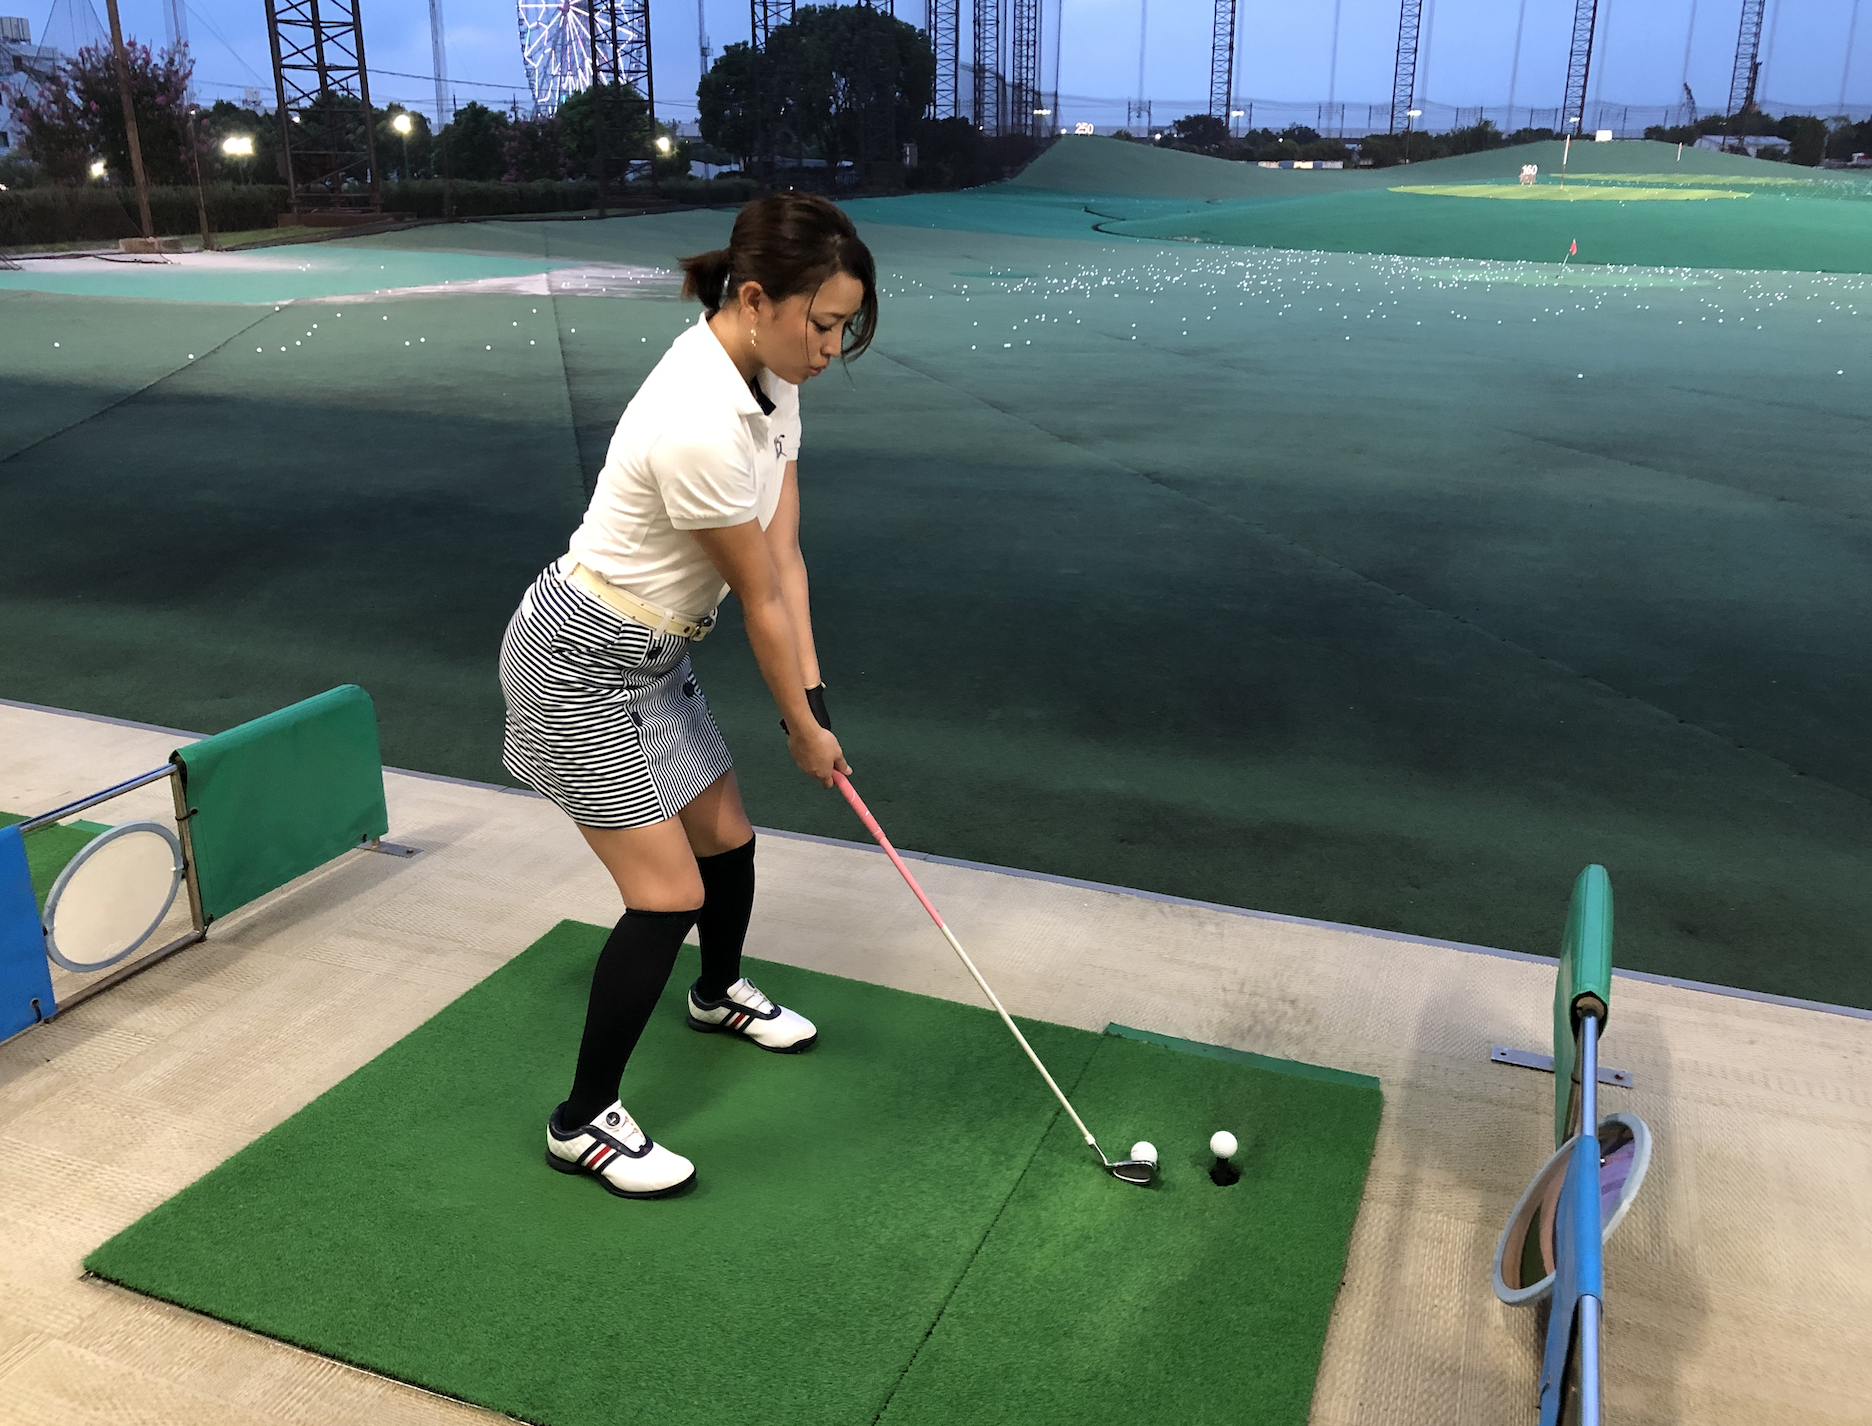 美人ゴルフ女子特集vol 3 初心者だけどゴルフ大好き四元江里香さんの練習について行ってみました Gridge グリッジ ゴルフ の楽しさをすべての人に